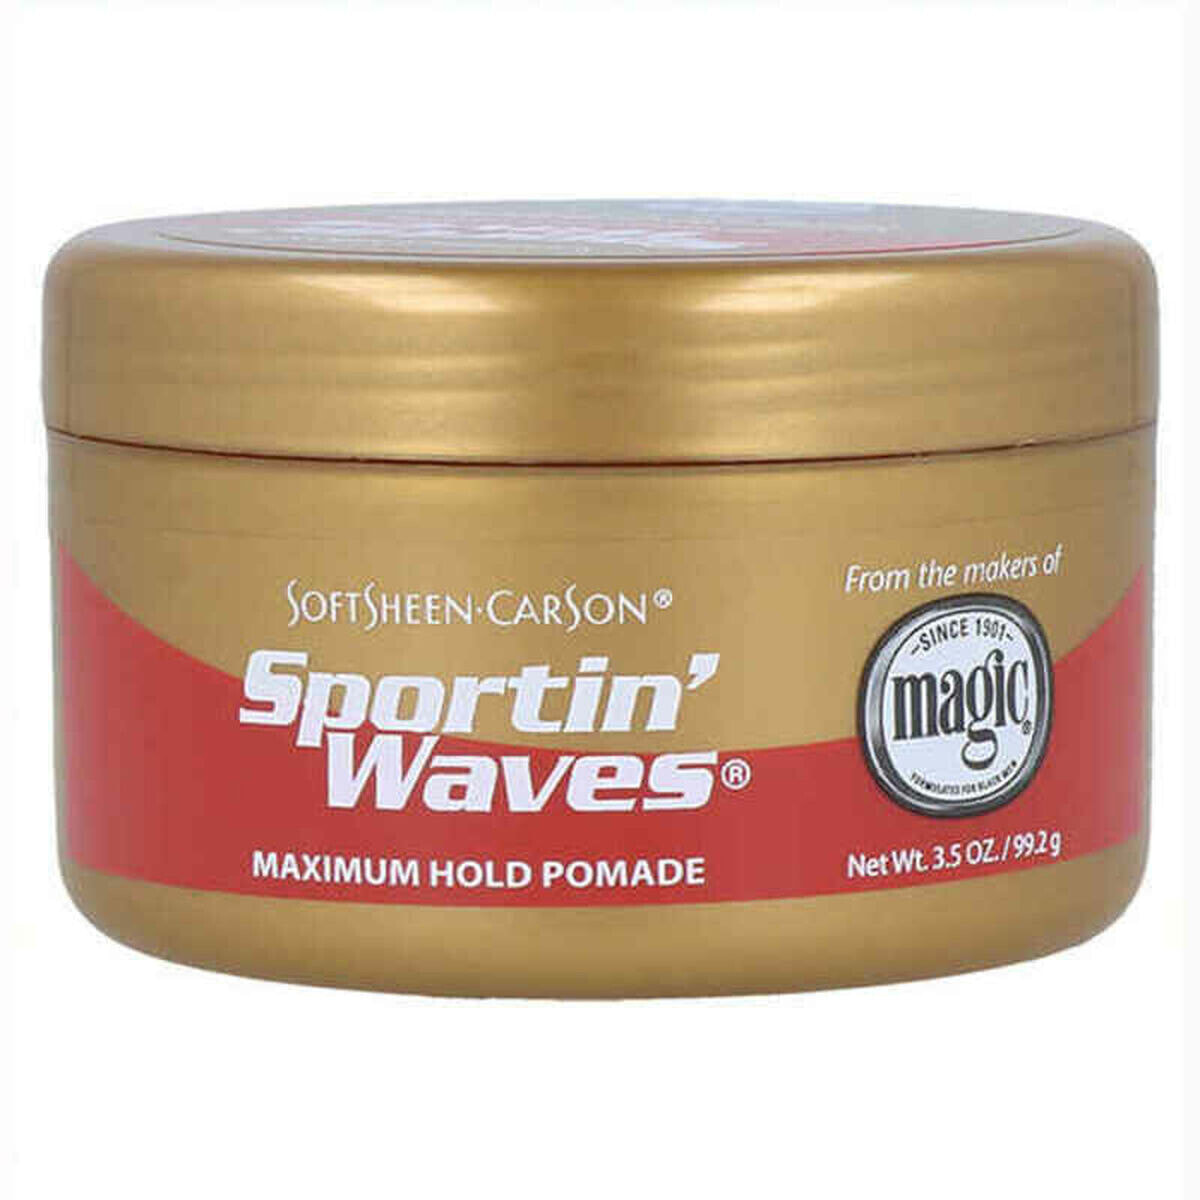 Сильный фиксатор для волос Soft & Sheen Carson Sportin'Waves (99,2 g)